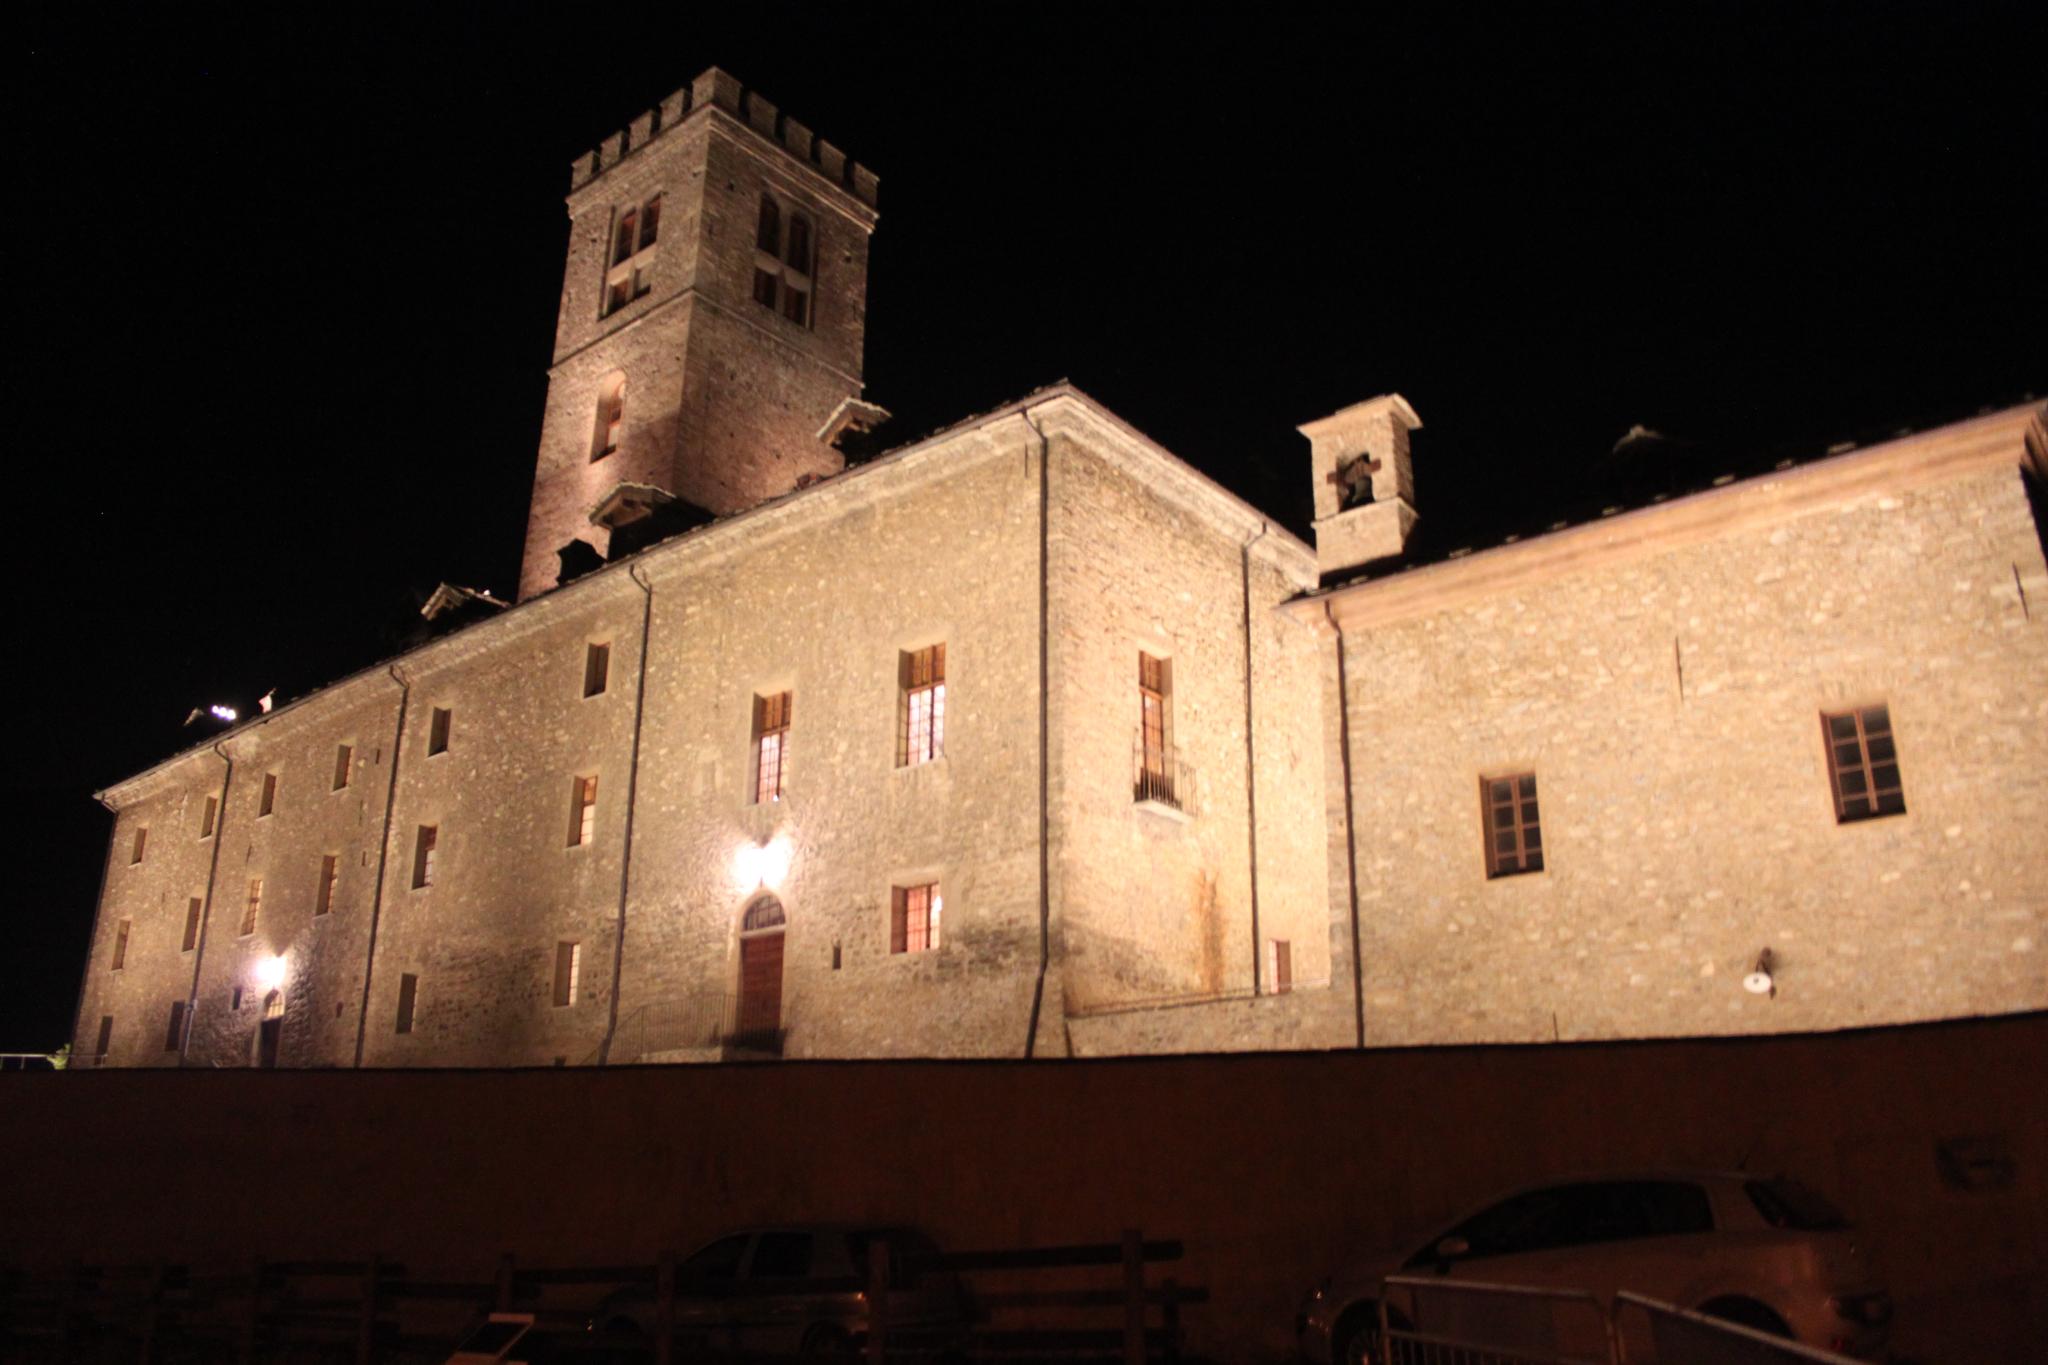 Coro Lavaredo - Aosta - Castello di Sarre - 16 - 17-06-2012 - 253.jpg